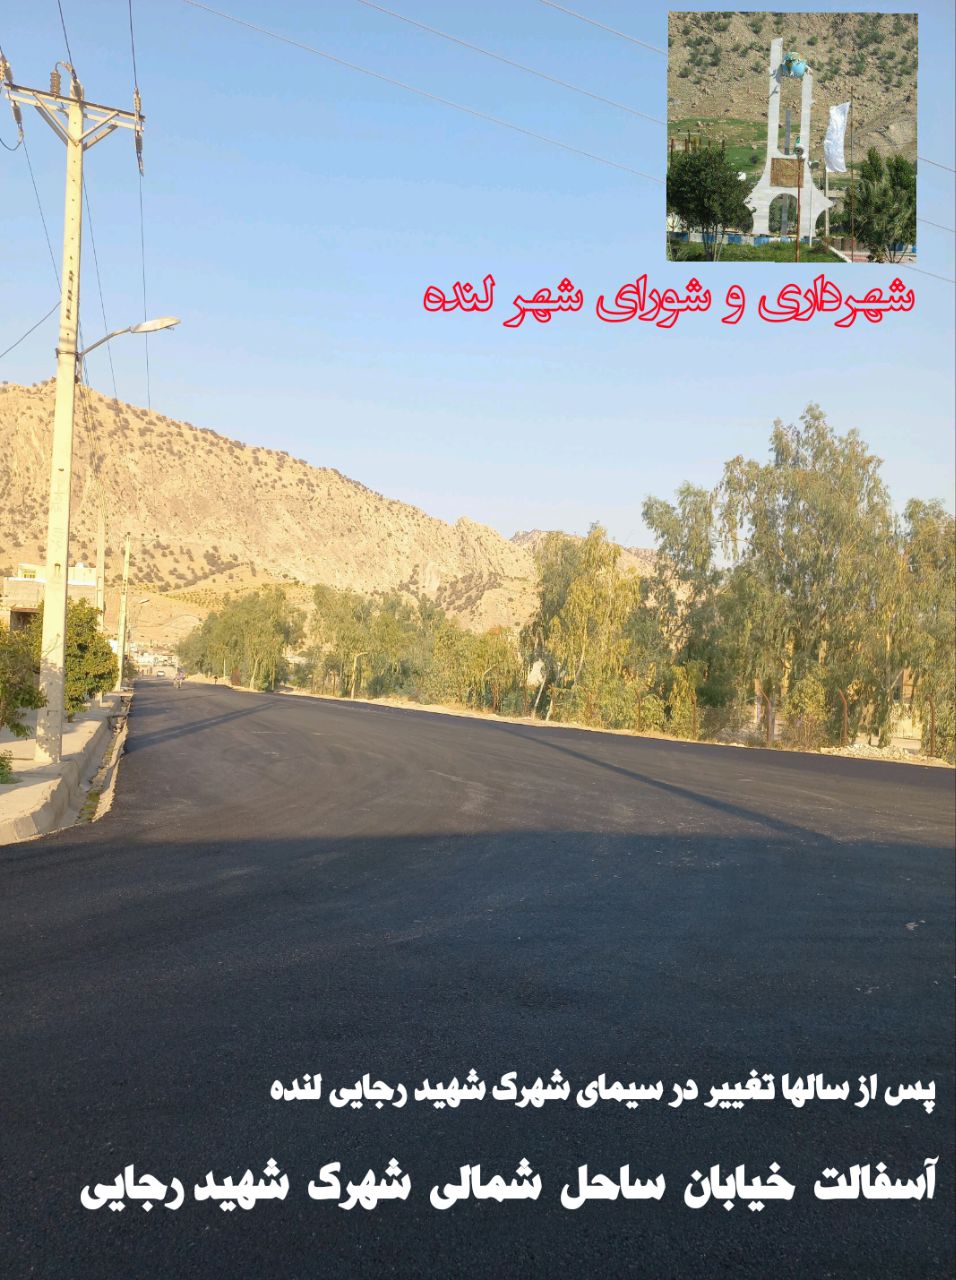 لنده در حال نو شدن است/پکیج عمرانی مهرماه شهرداری و شورای شهر 